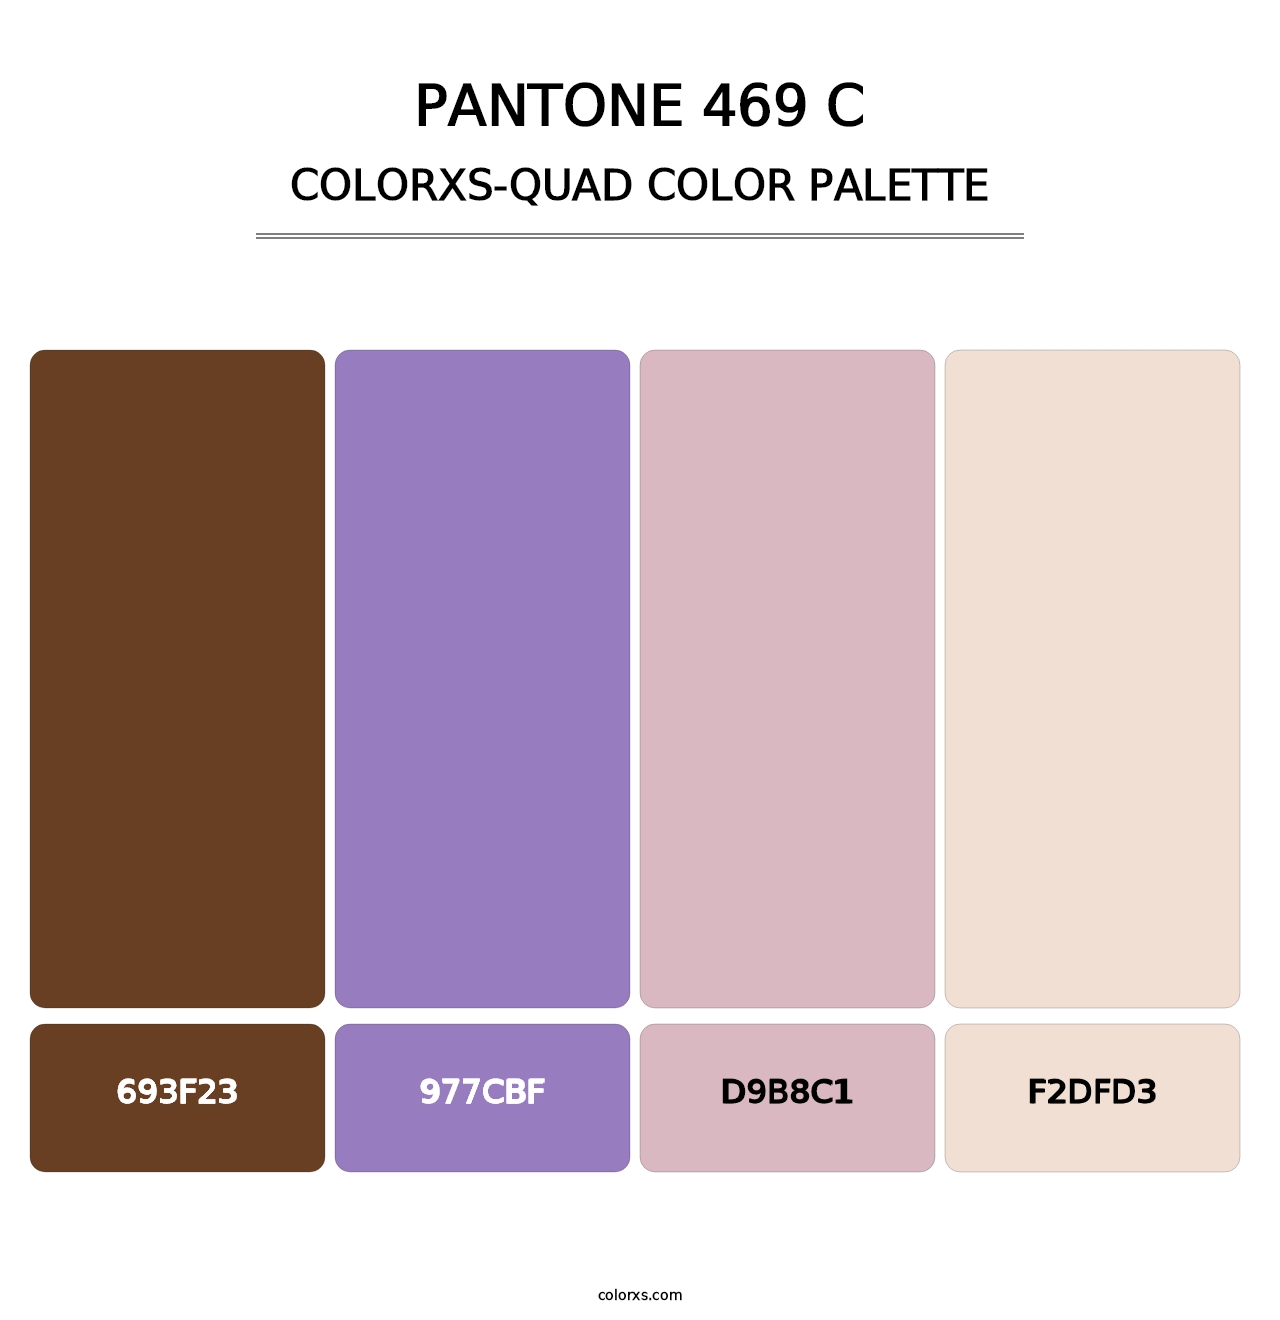 PANTONE 469 C - Colorxs Quad Palette